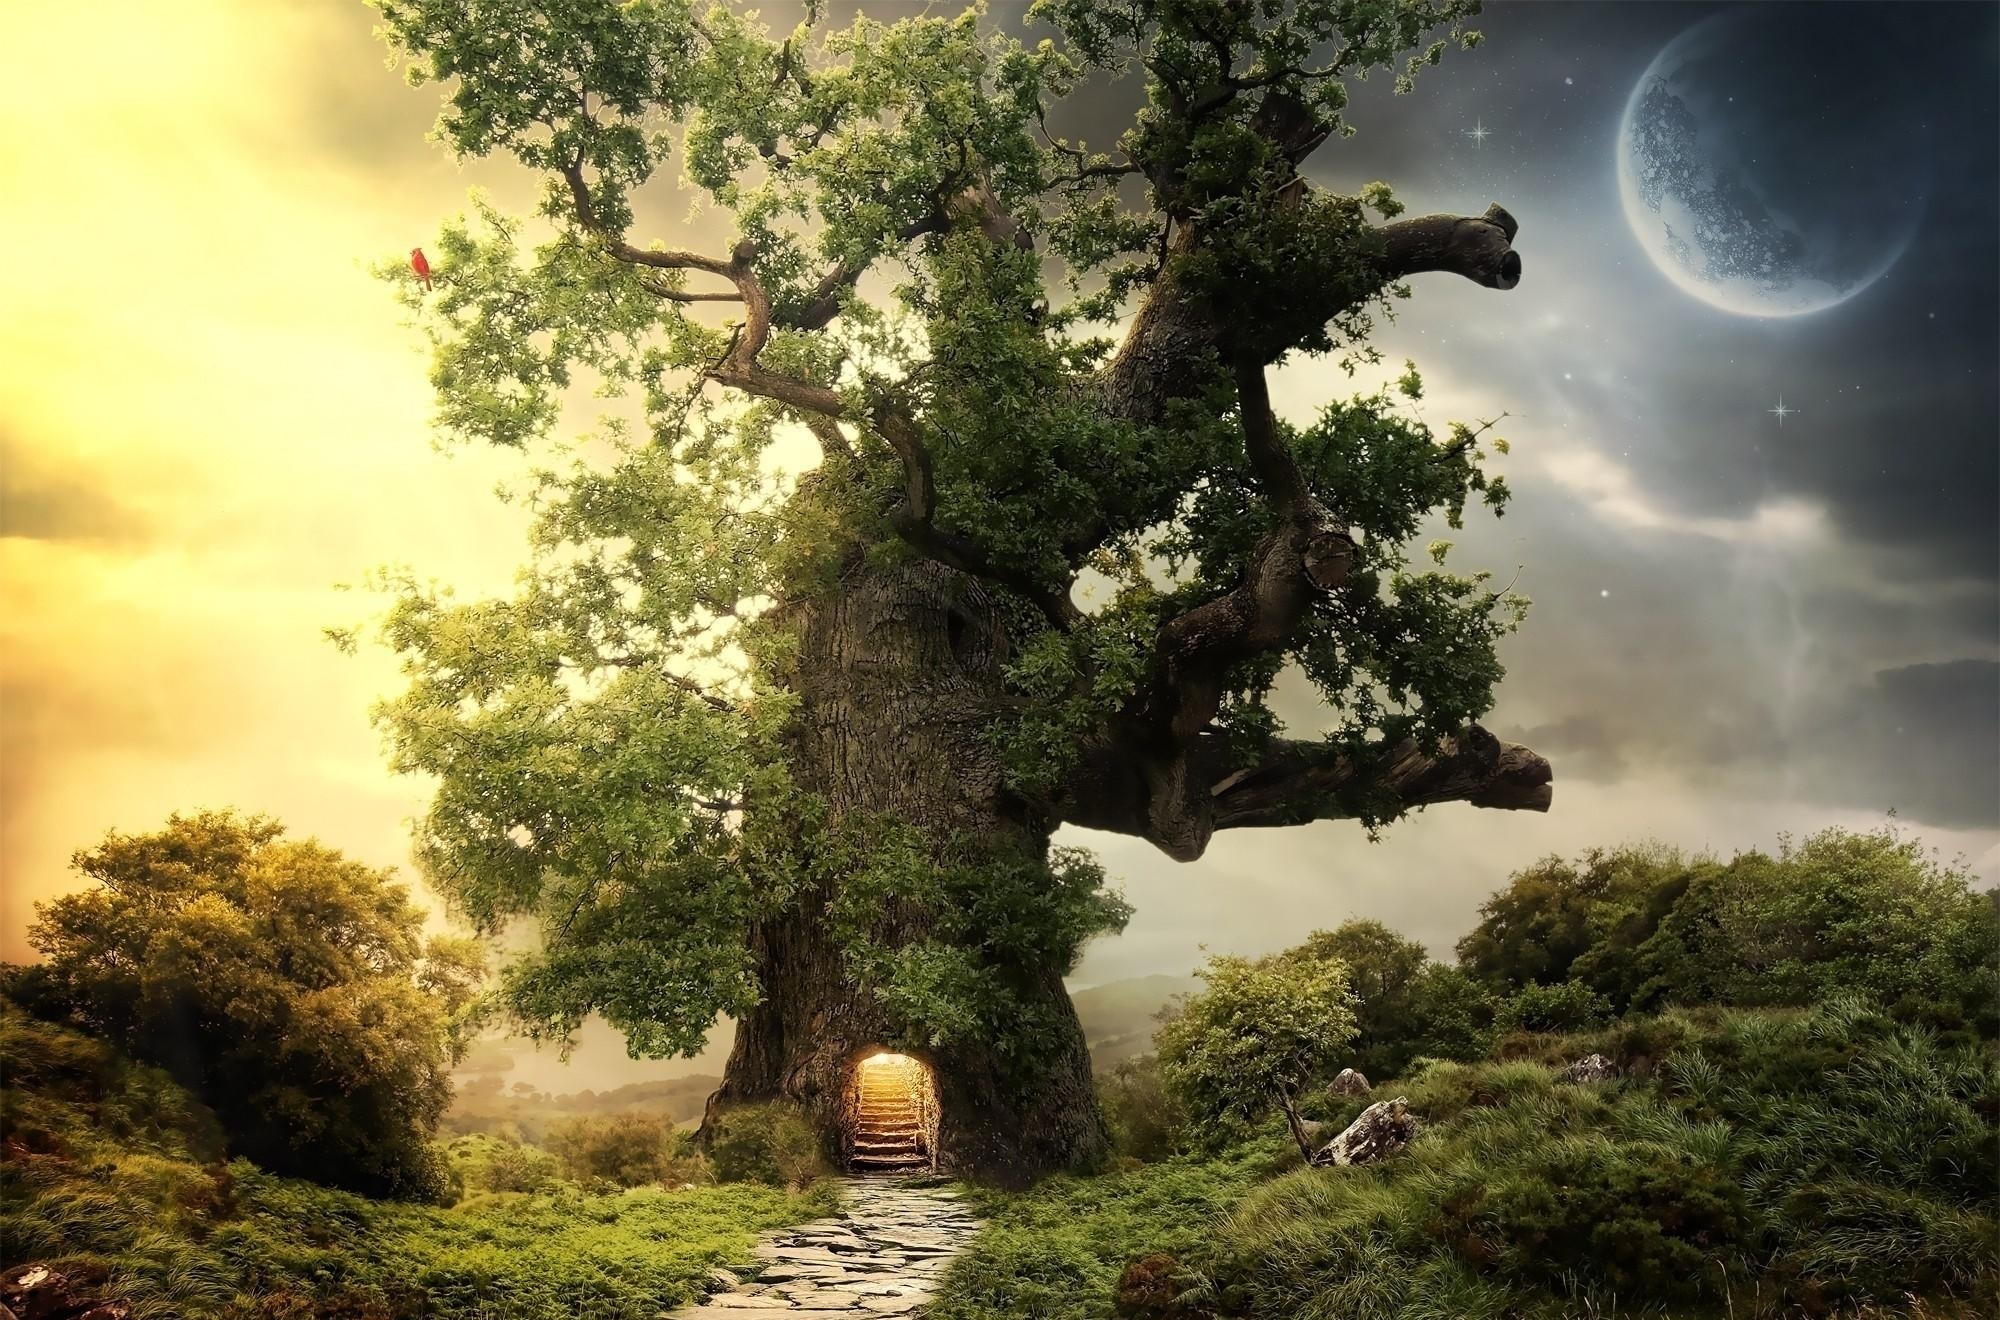 Free HD fantasy, tree, planet, greens, wood, steps, entrance